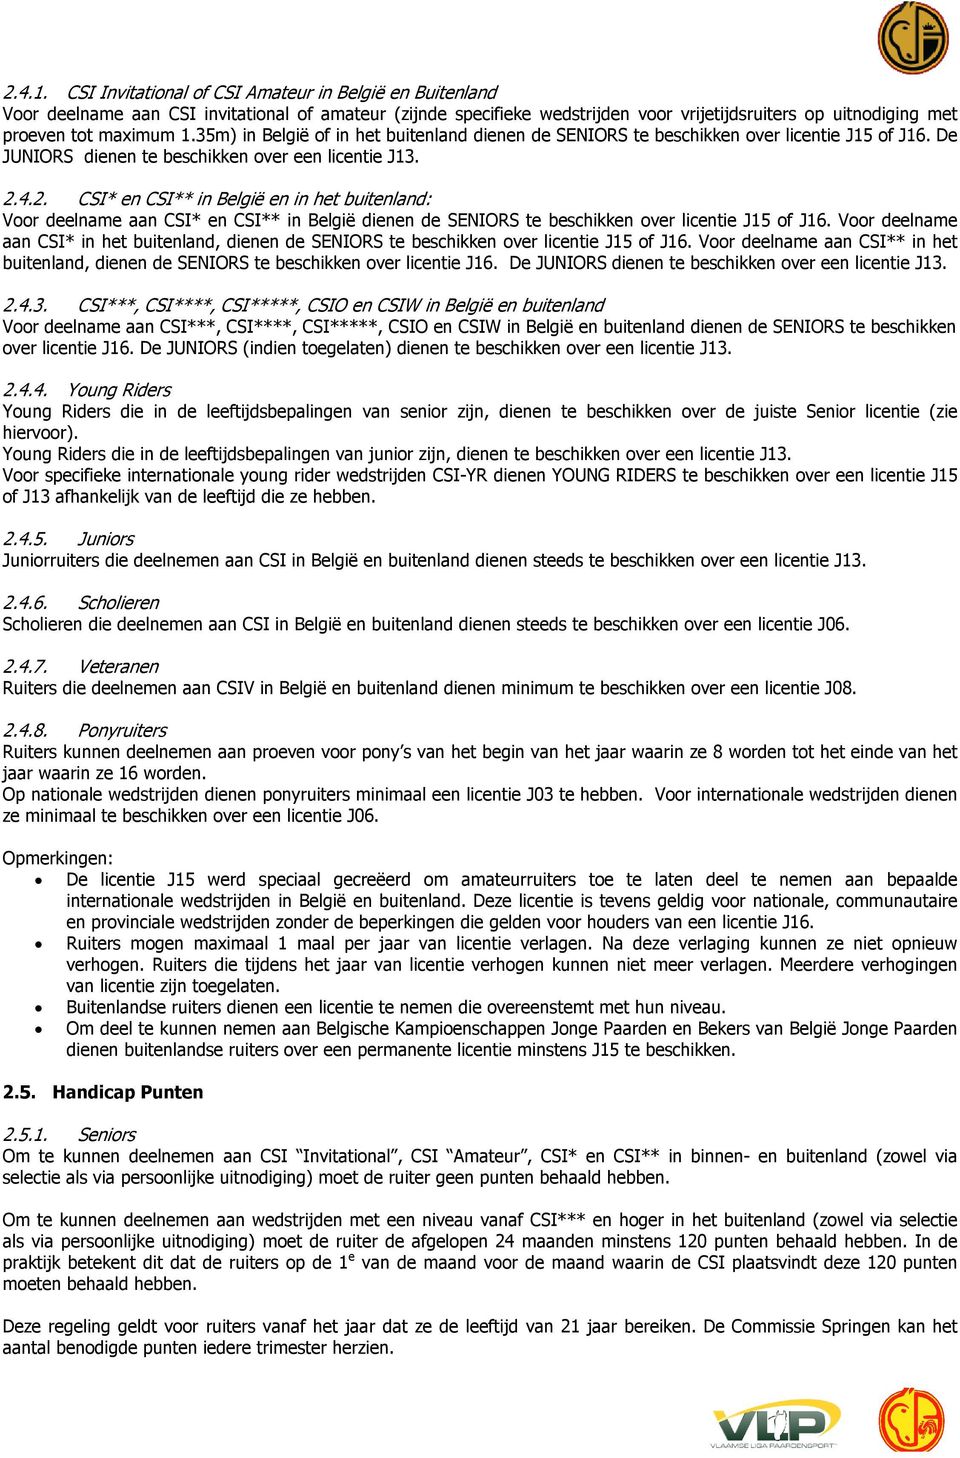 35m) in België of in het buitenland dienen de SENIORS te beschikken over licentie J15 of J16. De JUNIORS dienen te beschikken over een licentie J13. 2.